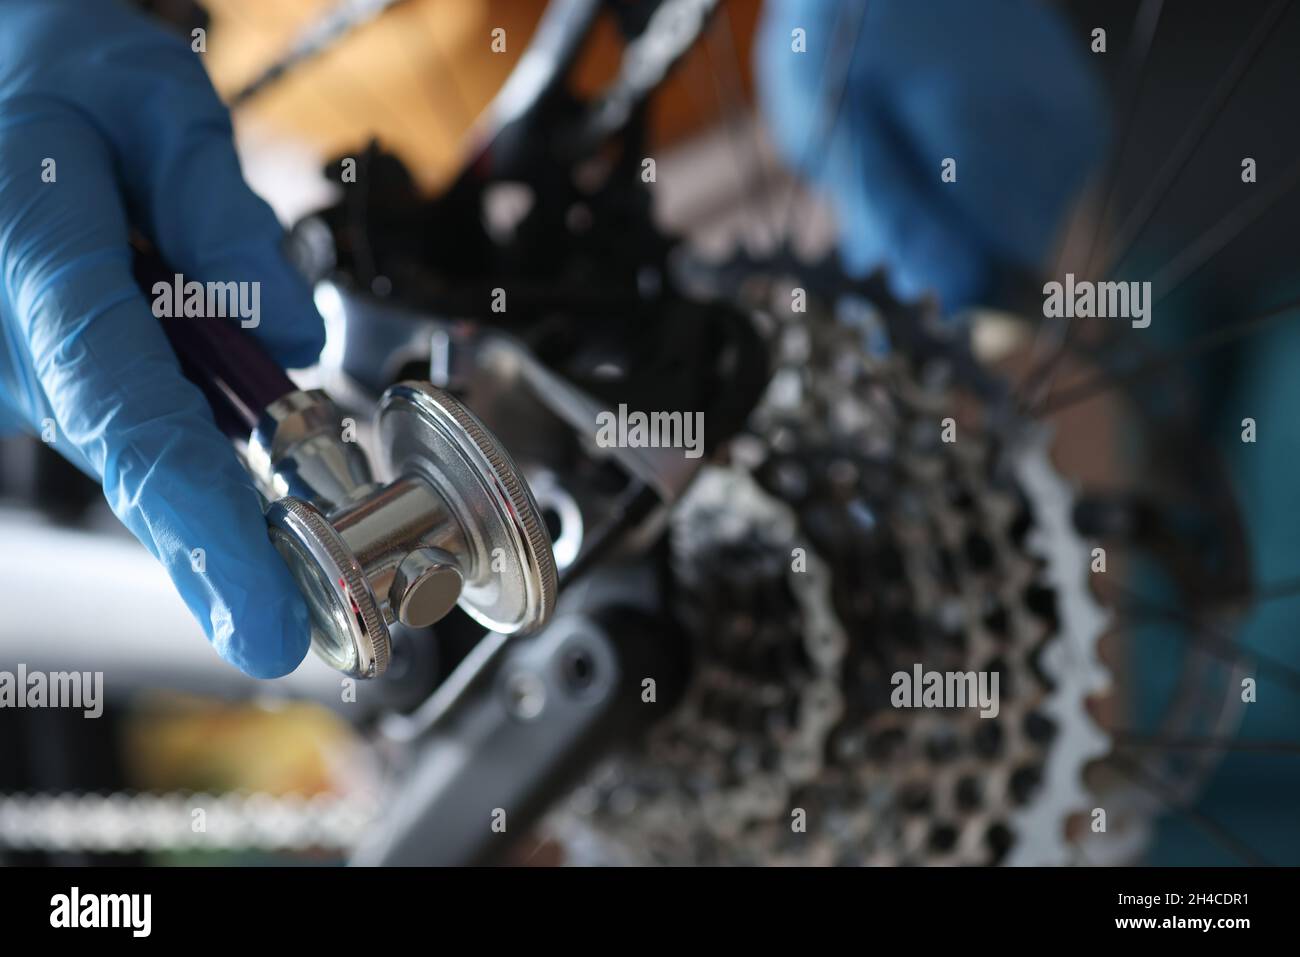 Eine Handschuhen hält einen Schlüssel, um das Fahrrad einzustellen Stockfoto